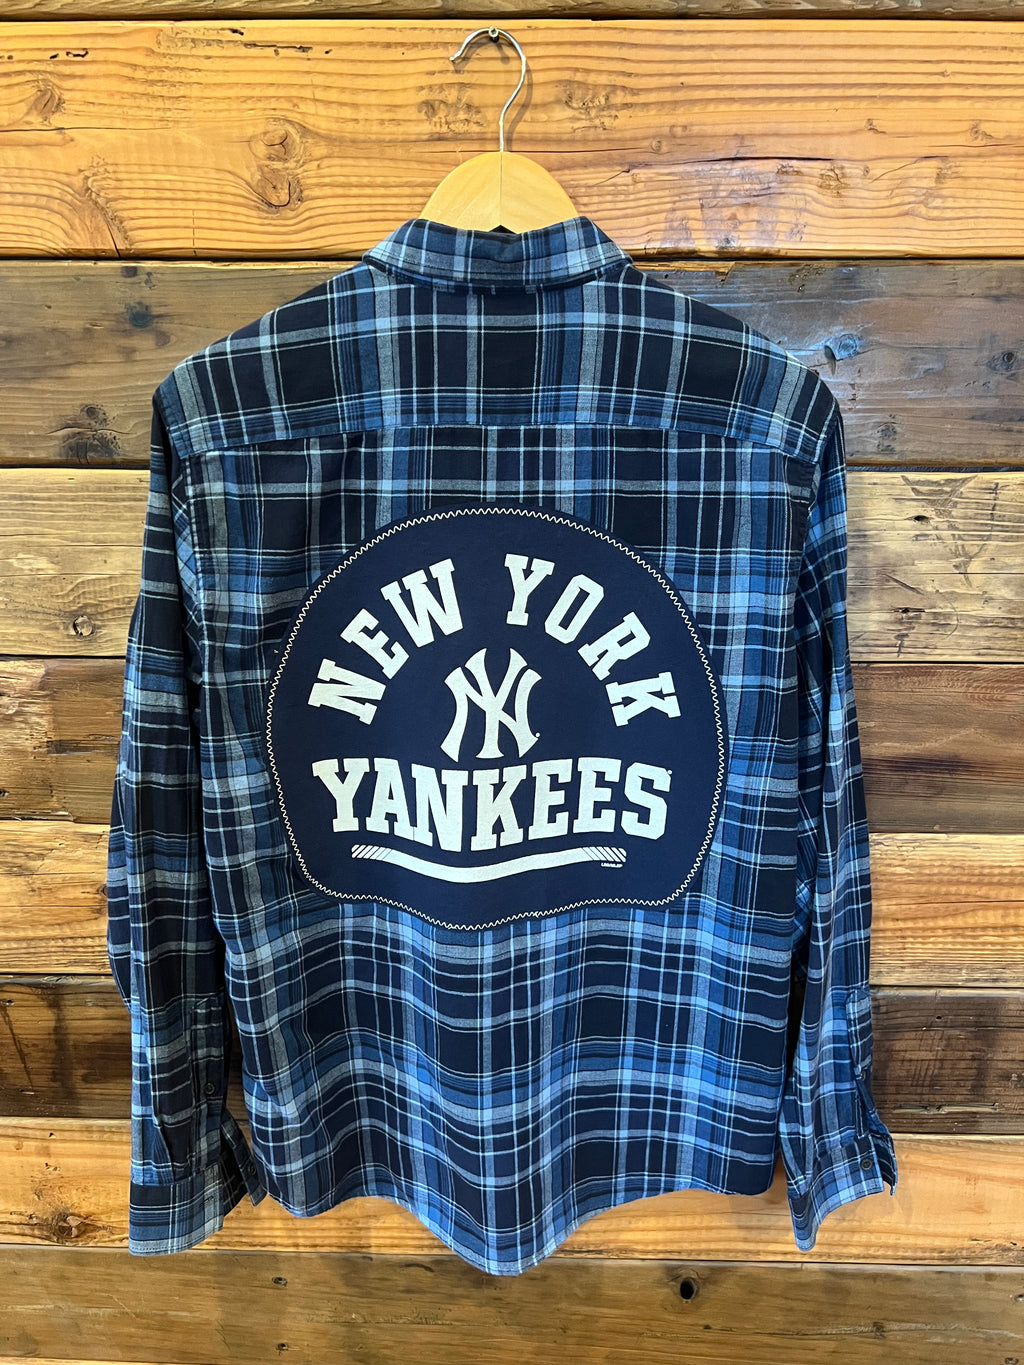 New York Yankees one of a kind custom Slate & Stone plaid shirt